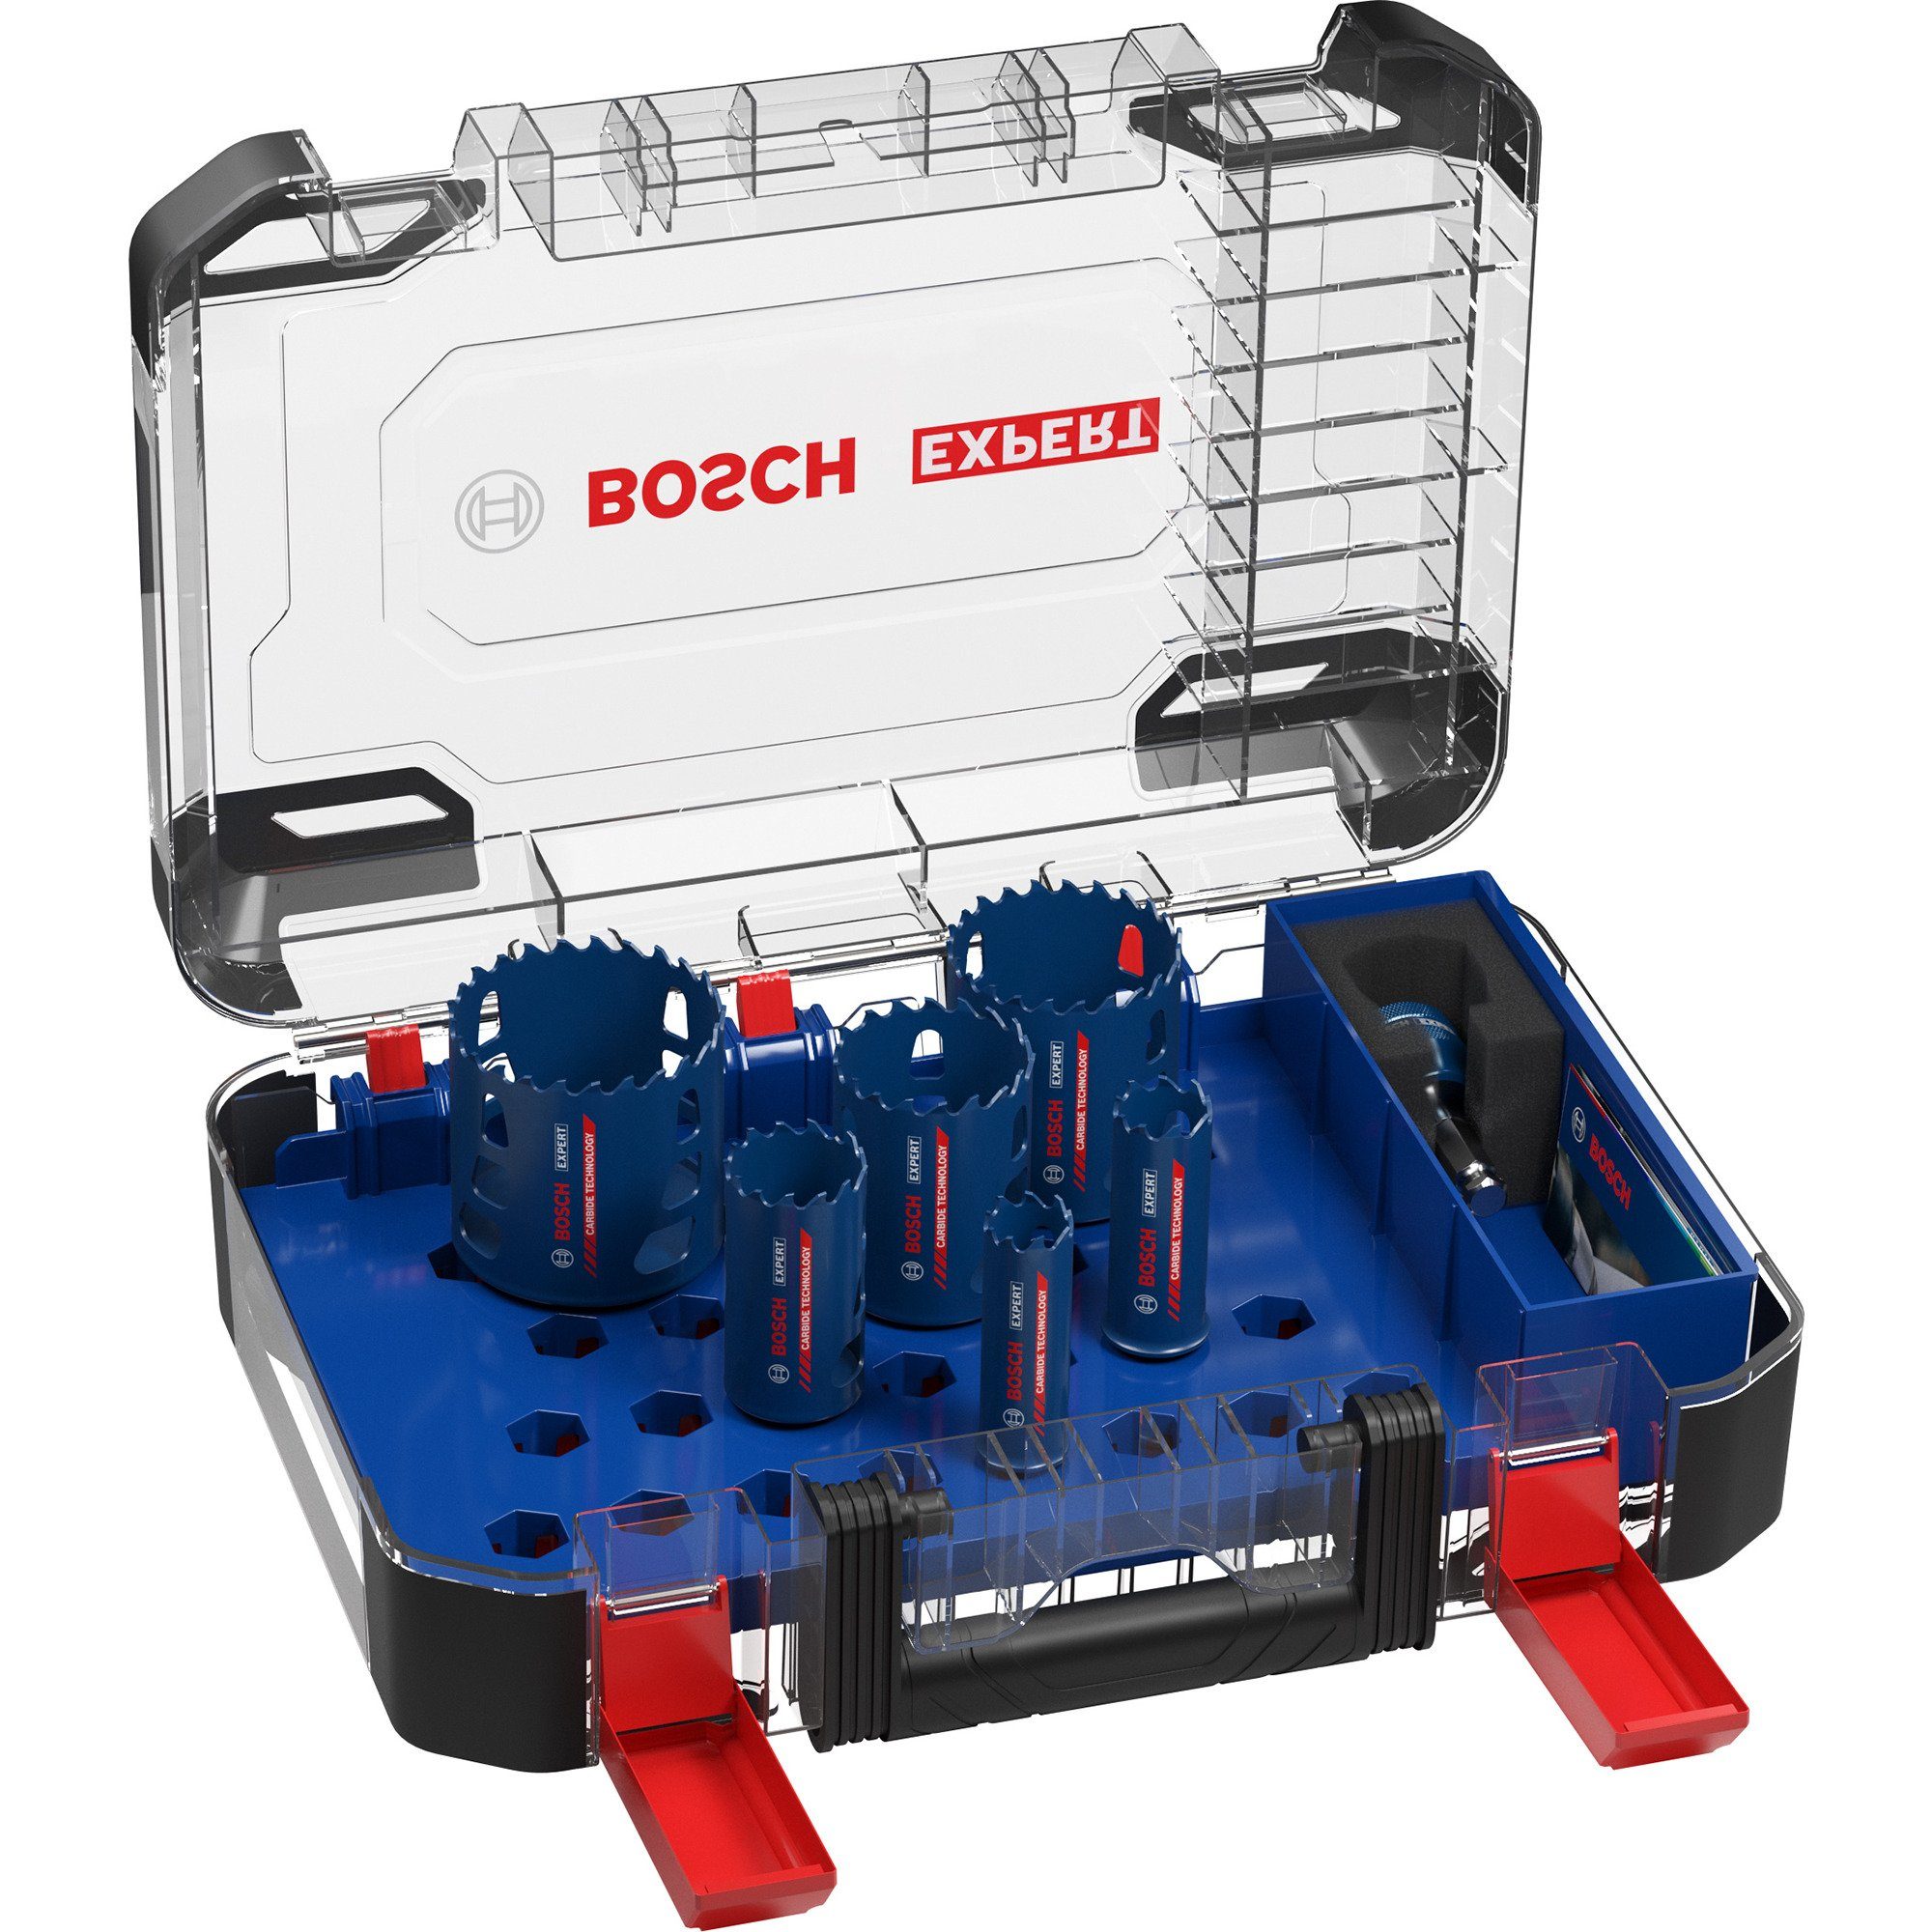 Tough Bosch Professional Bosch 9-tlg., Set, Standard-Bohrfutter Material, EXPERT Power-Change-Adapter, Lochsäge mm, Aufnahmesystem: 22/25/35/51/60/68